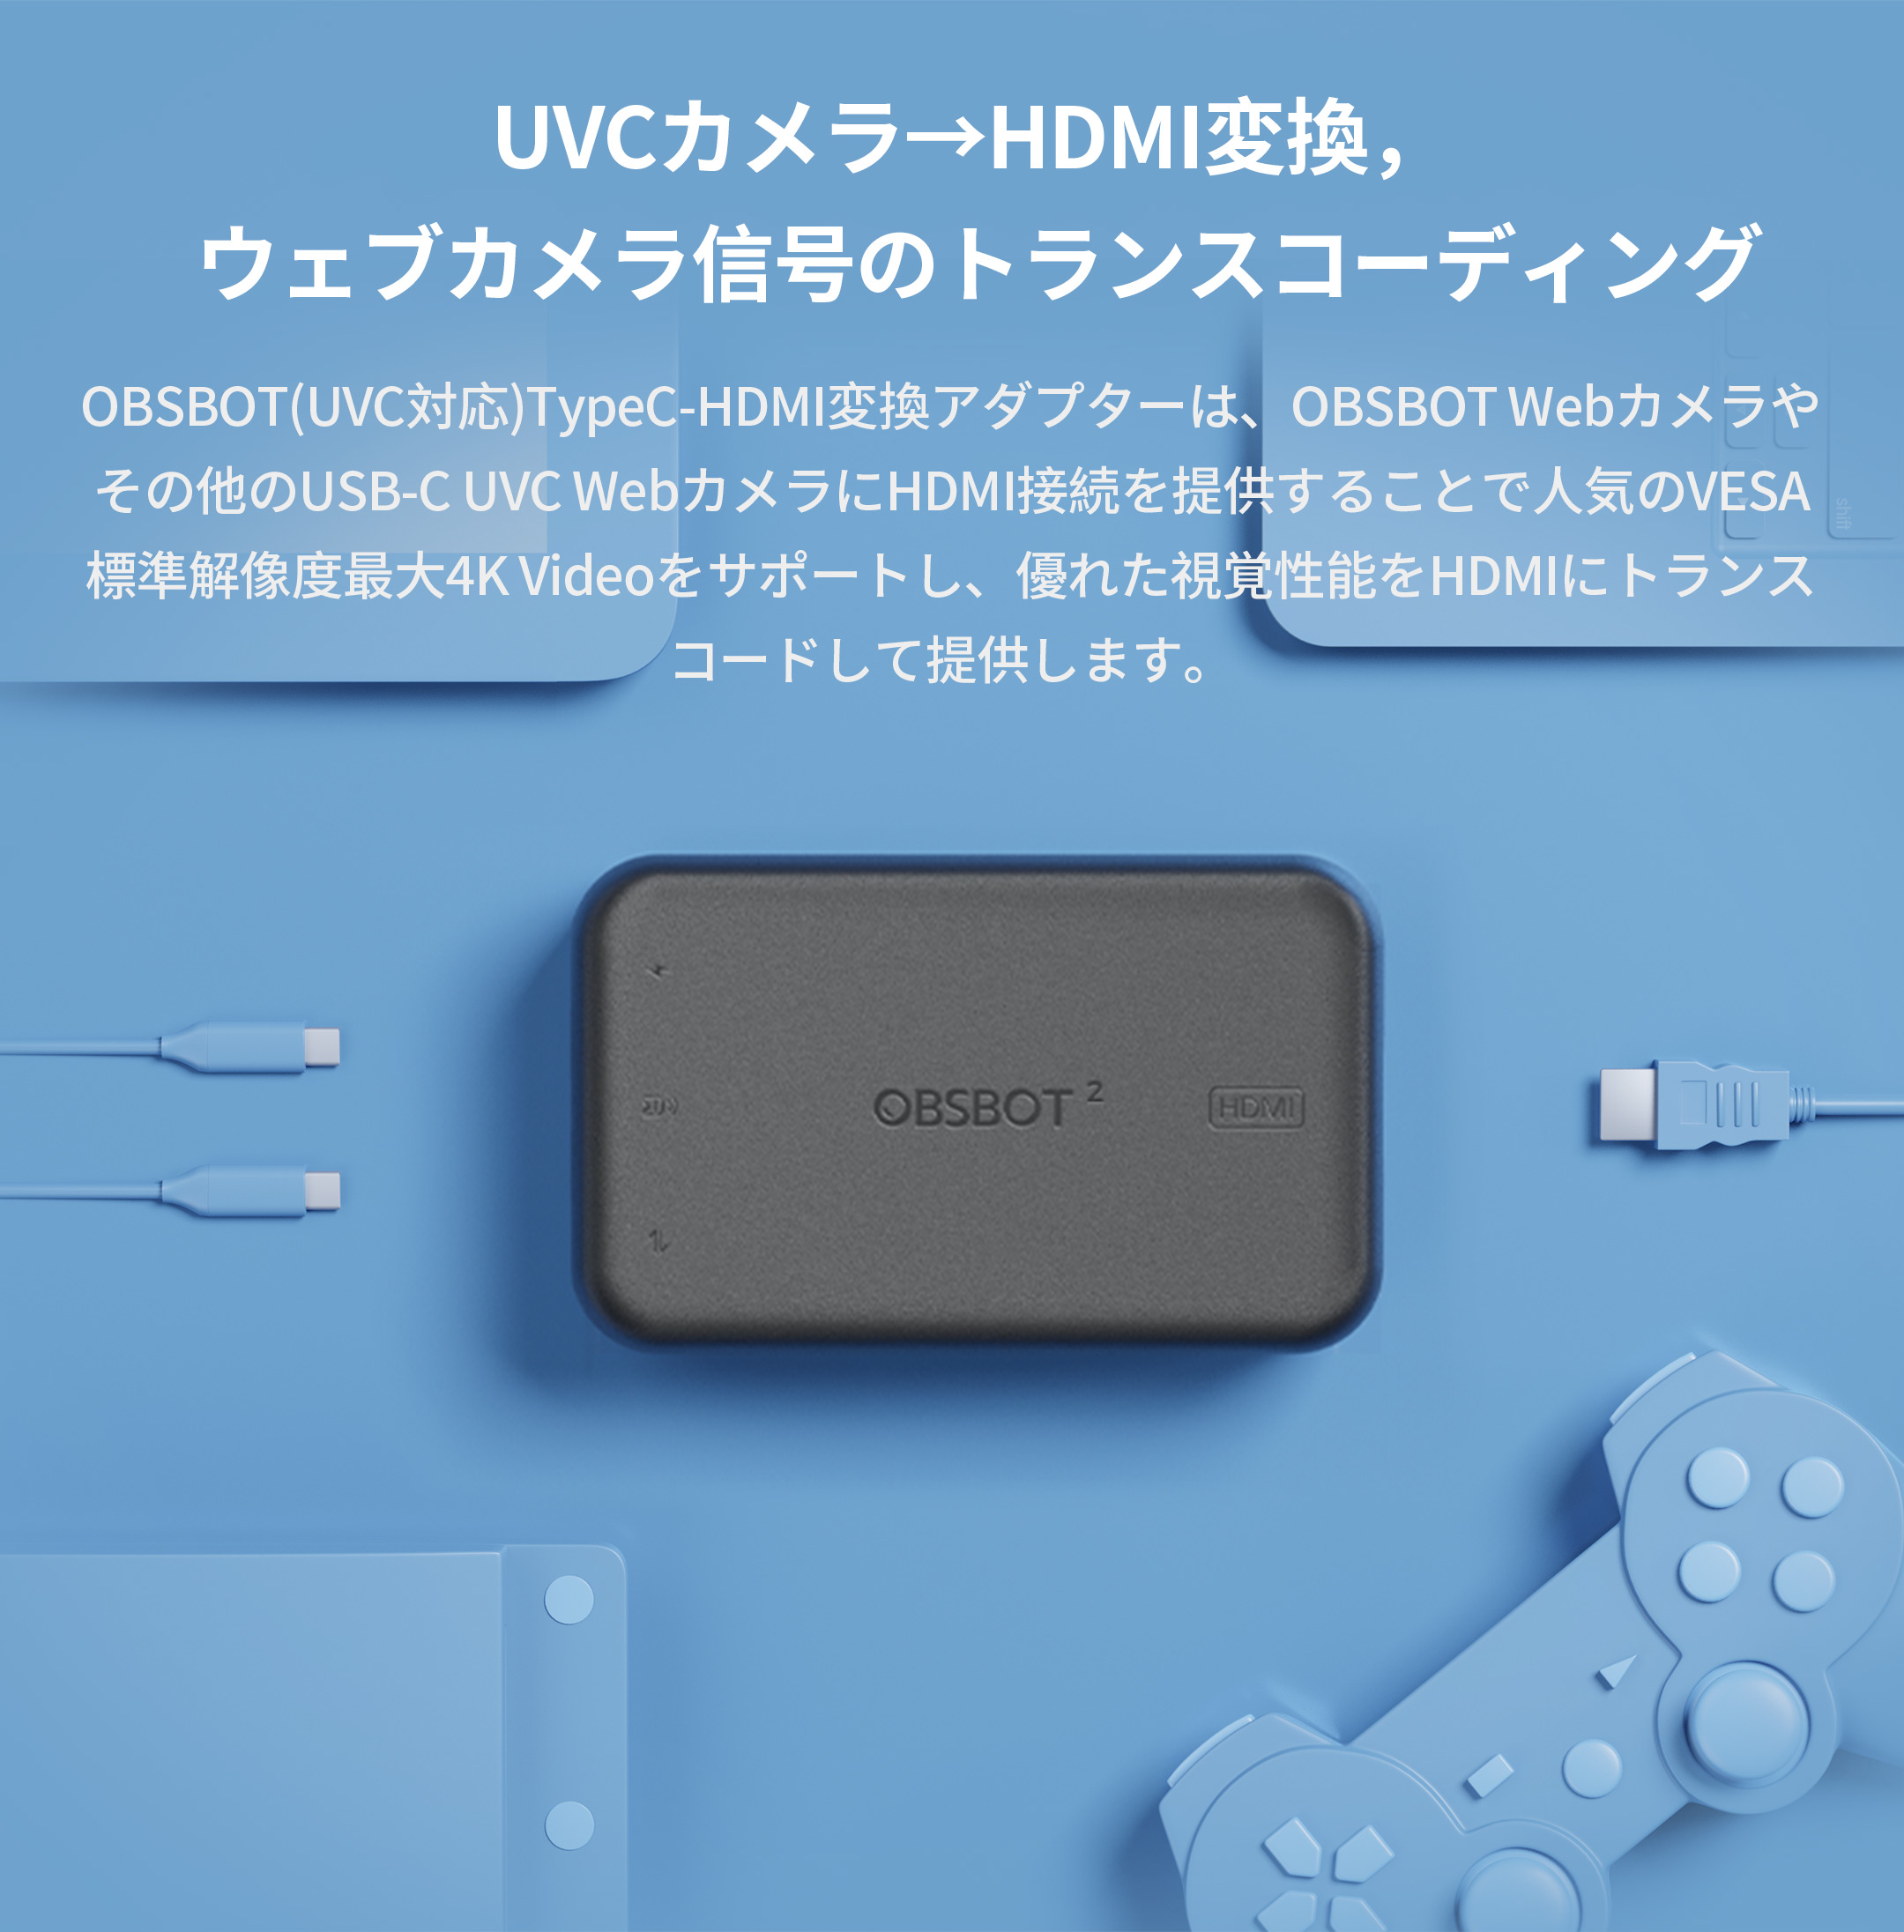 OBSBOT Store - OBSBOT(UVC対応)TypeC-HDMI変換アダプター 2nd Gen